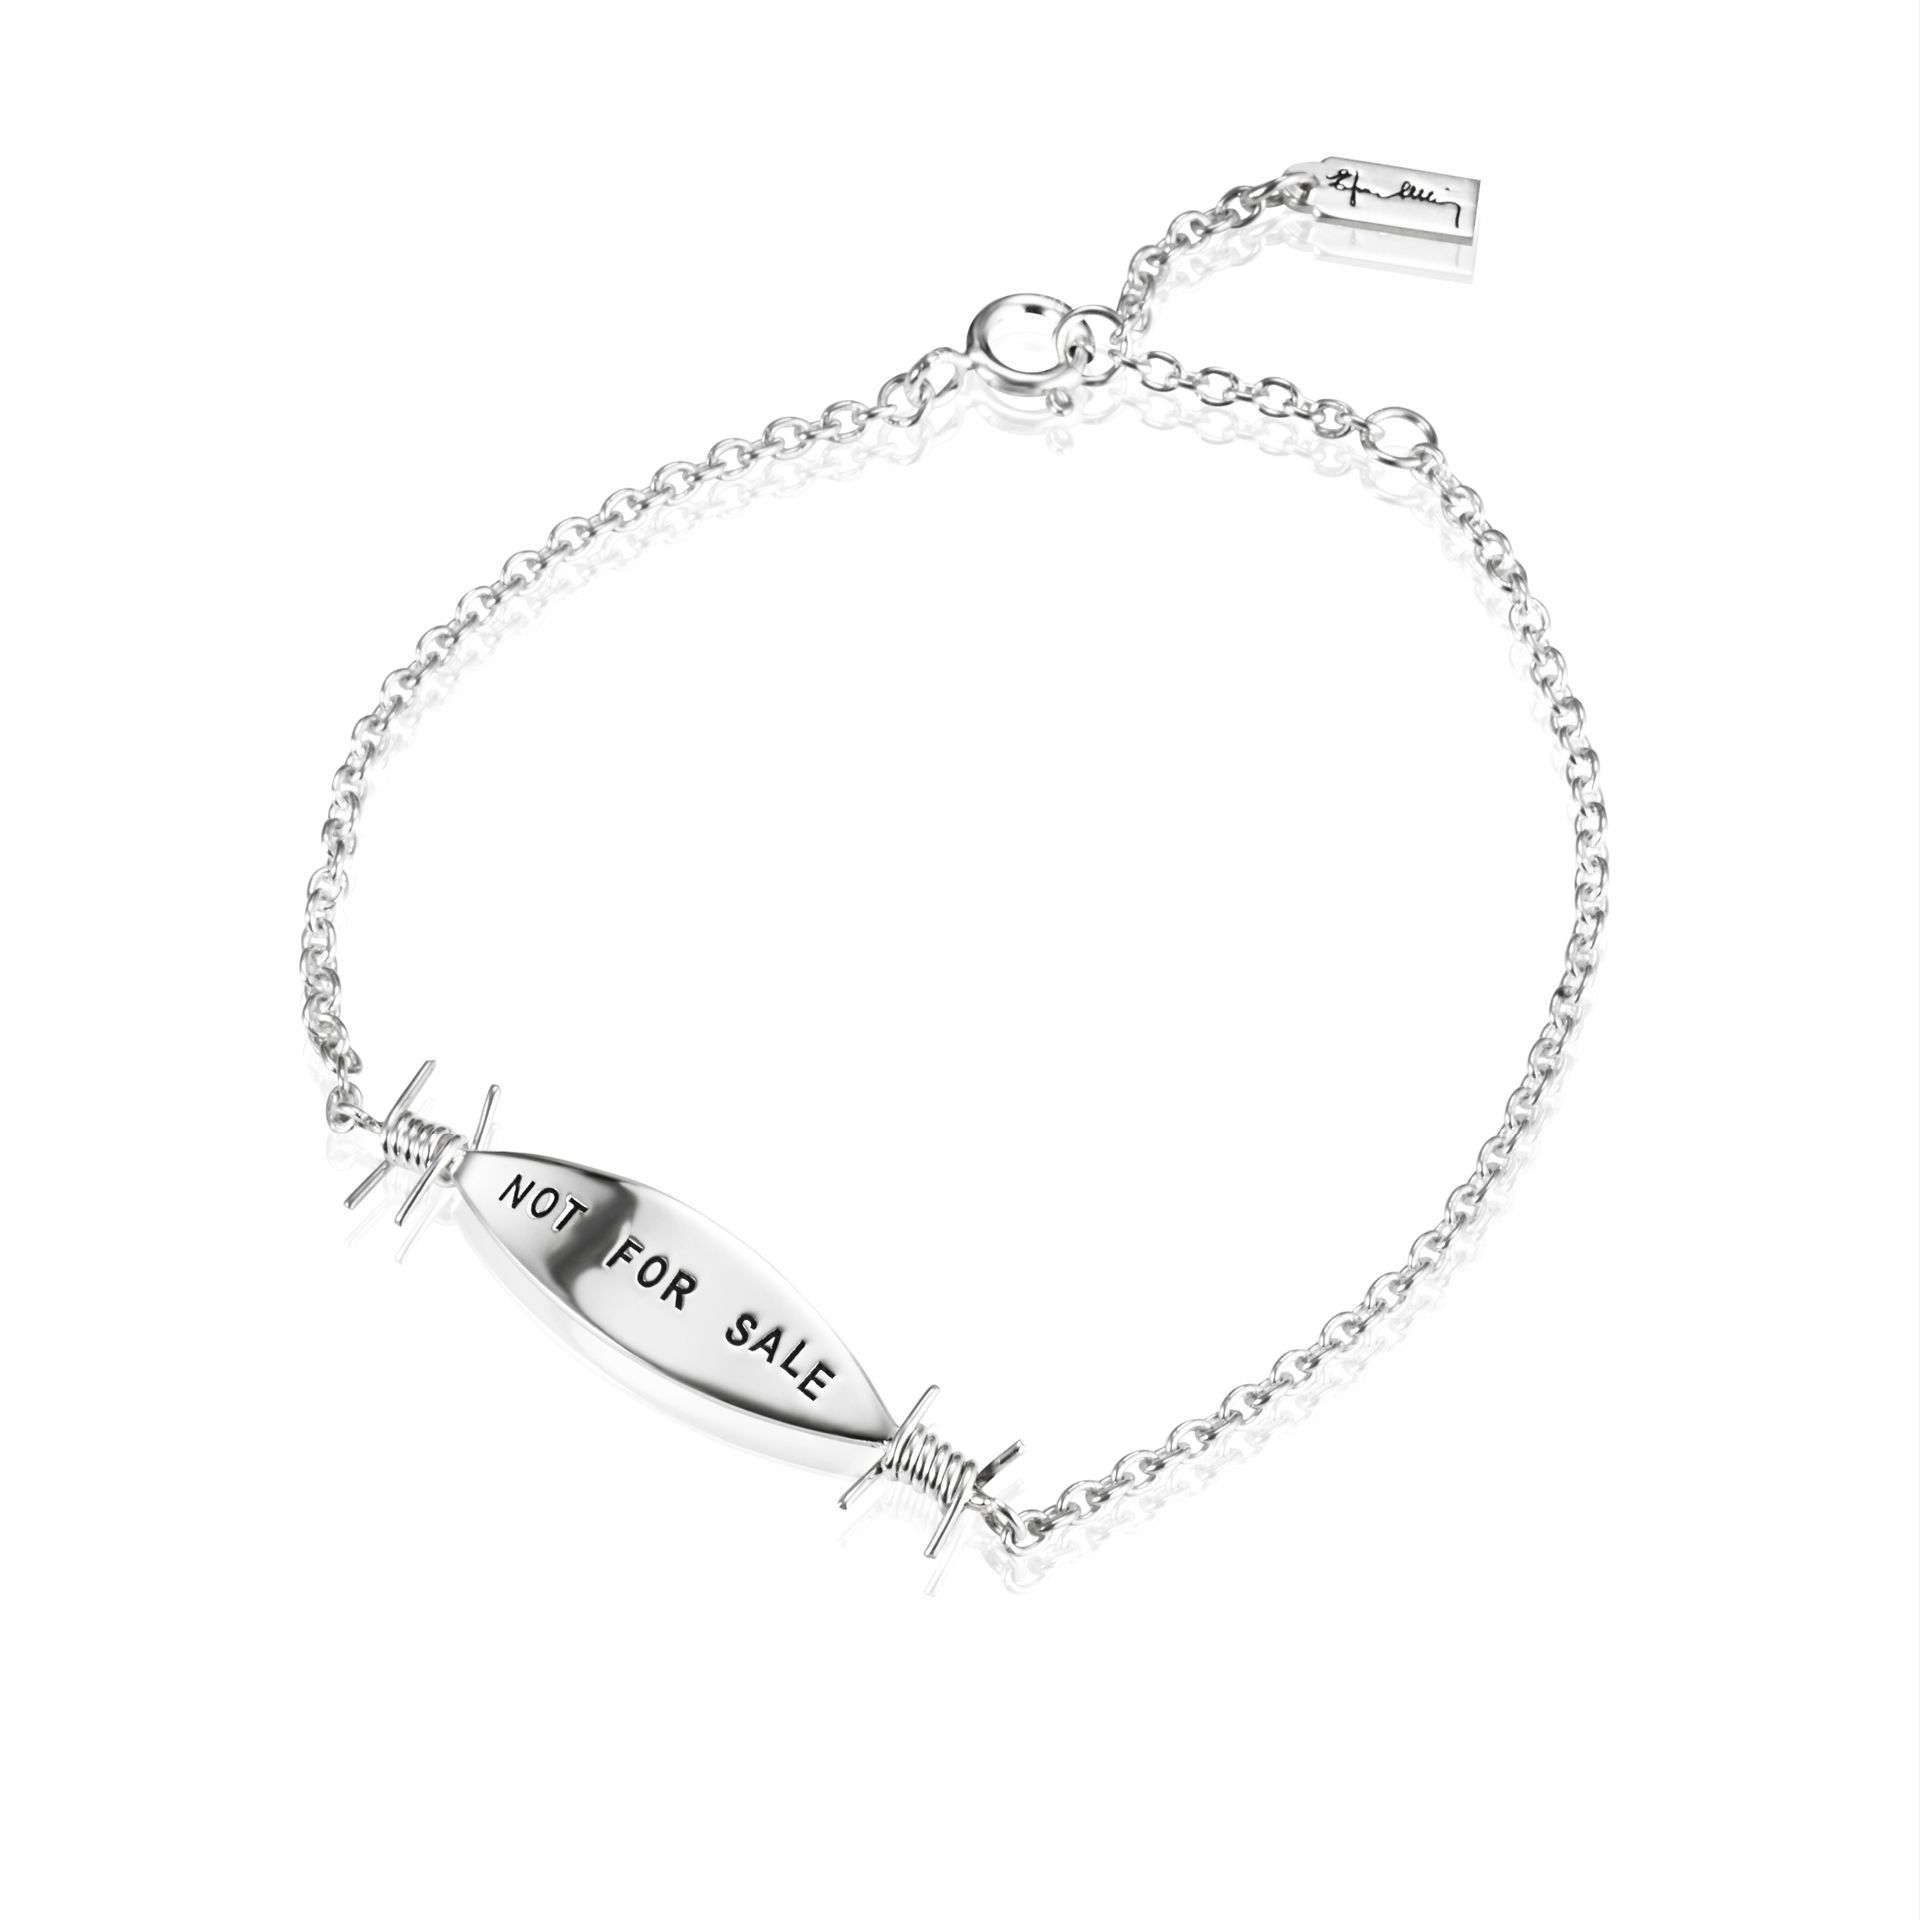 Efva Attling Not For Sale Bracelet. 16/17.5/19 CM - SILVER